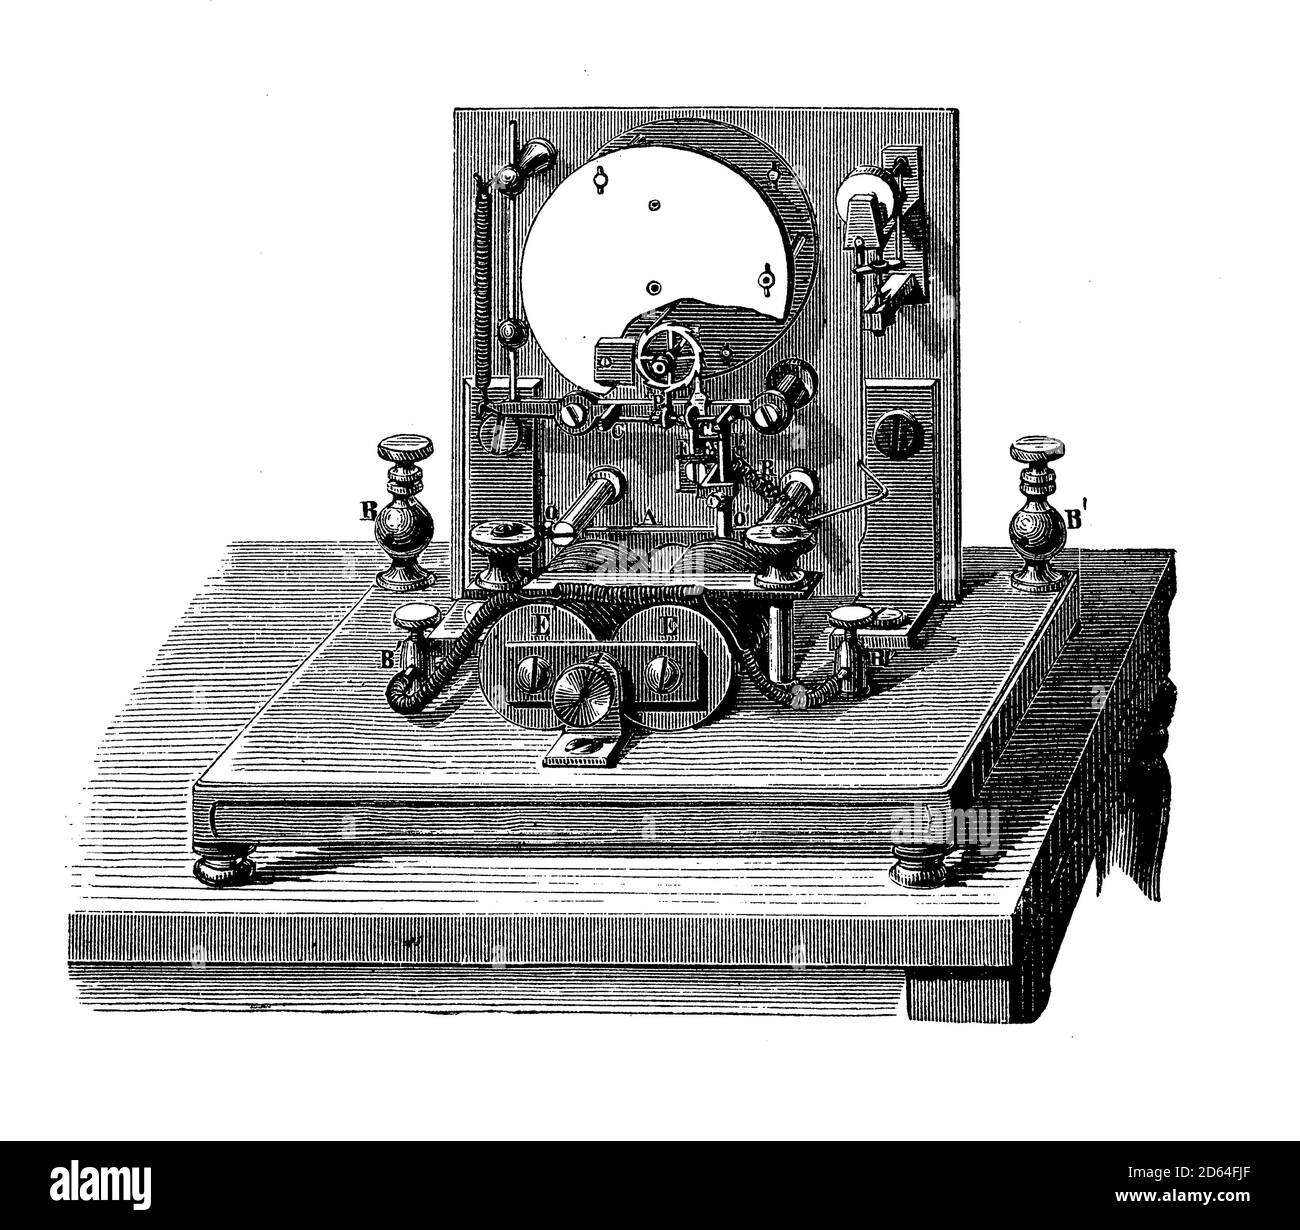 Technologie vintage: Détail du télégraphe à pointeur de Wheatstone de 1839 avec un pointeur indiquant la lettre transmise d'un mécanisme d'aiguilles à commande électrique Banque D'Images